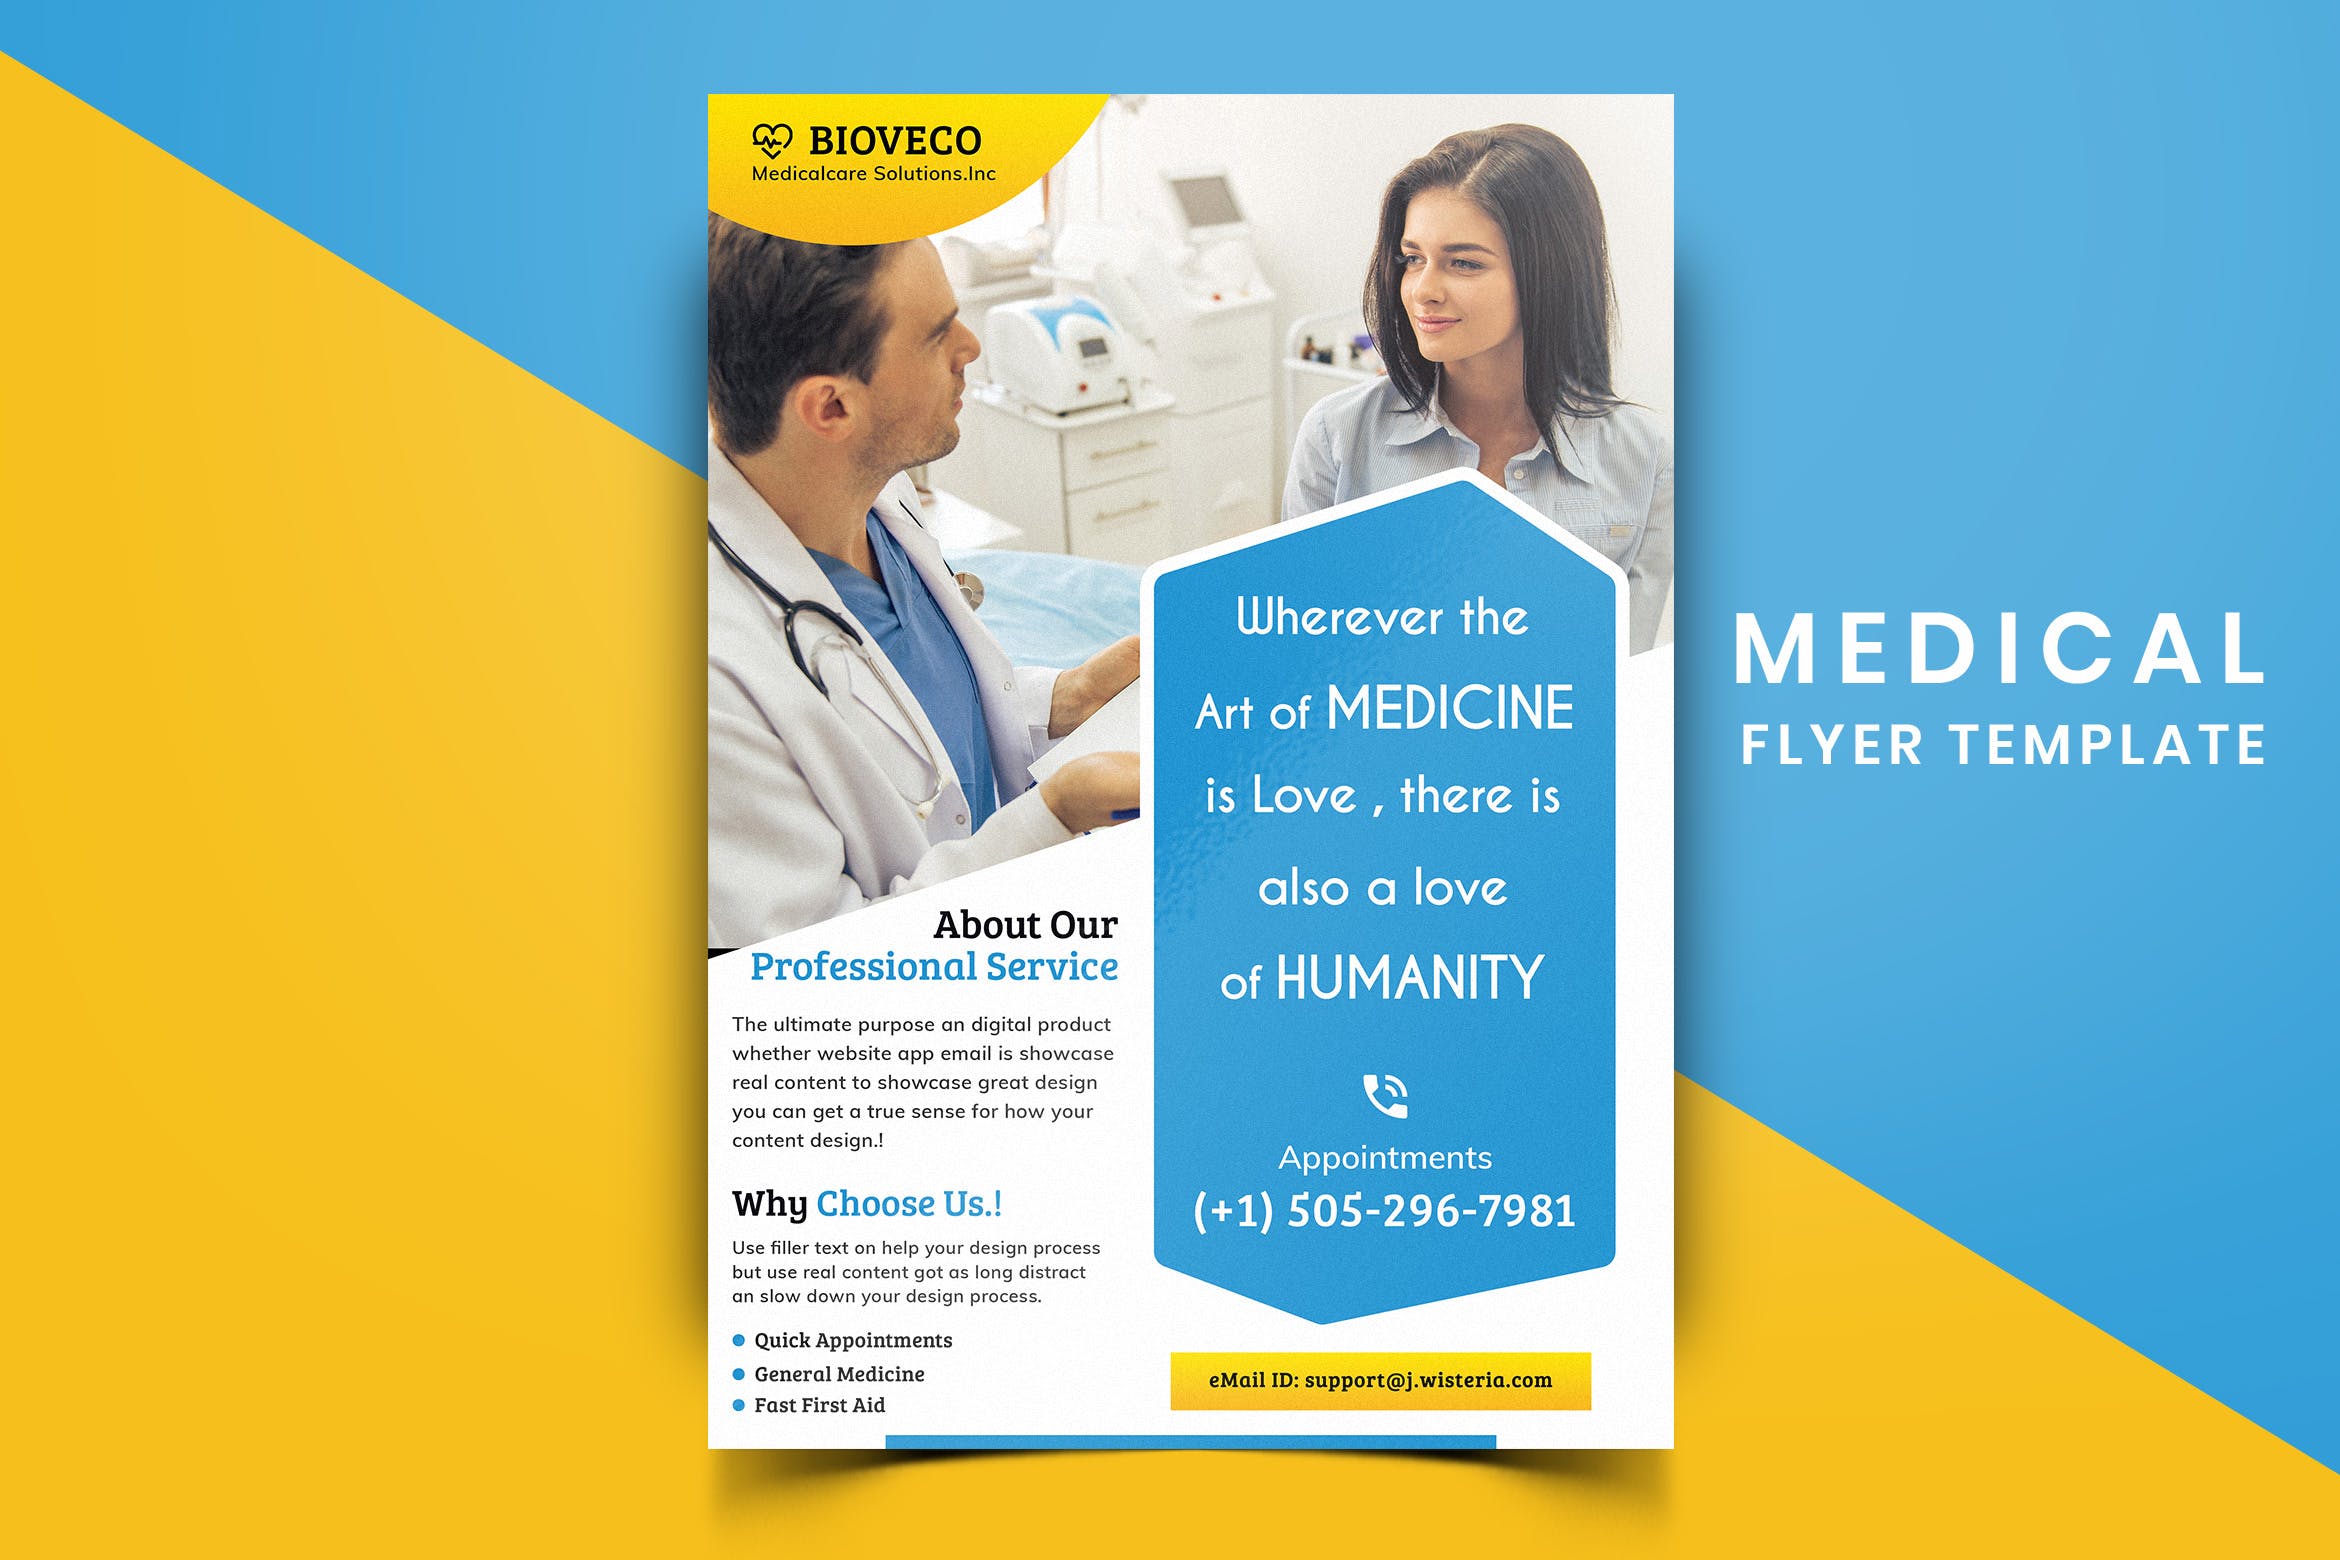 医院诊所医疗主题宣传单排版设计模板v10 Medical Flyer Template-10插图